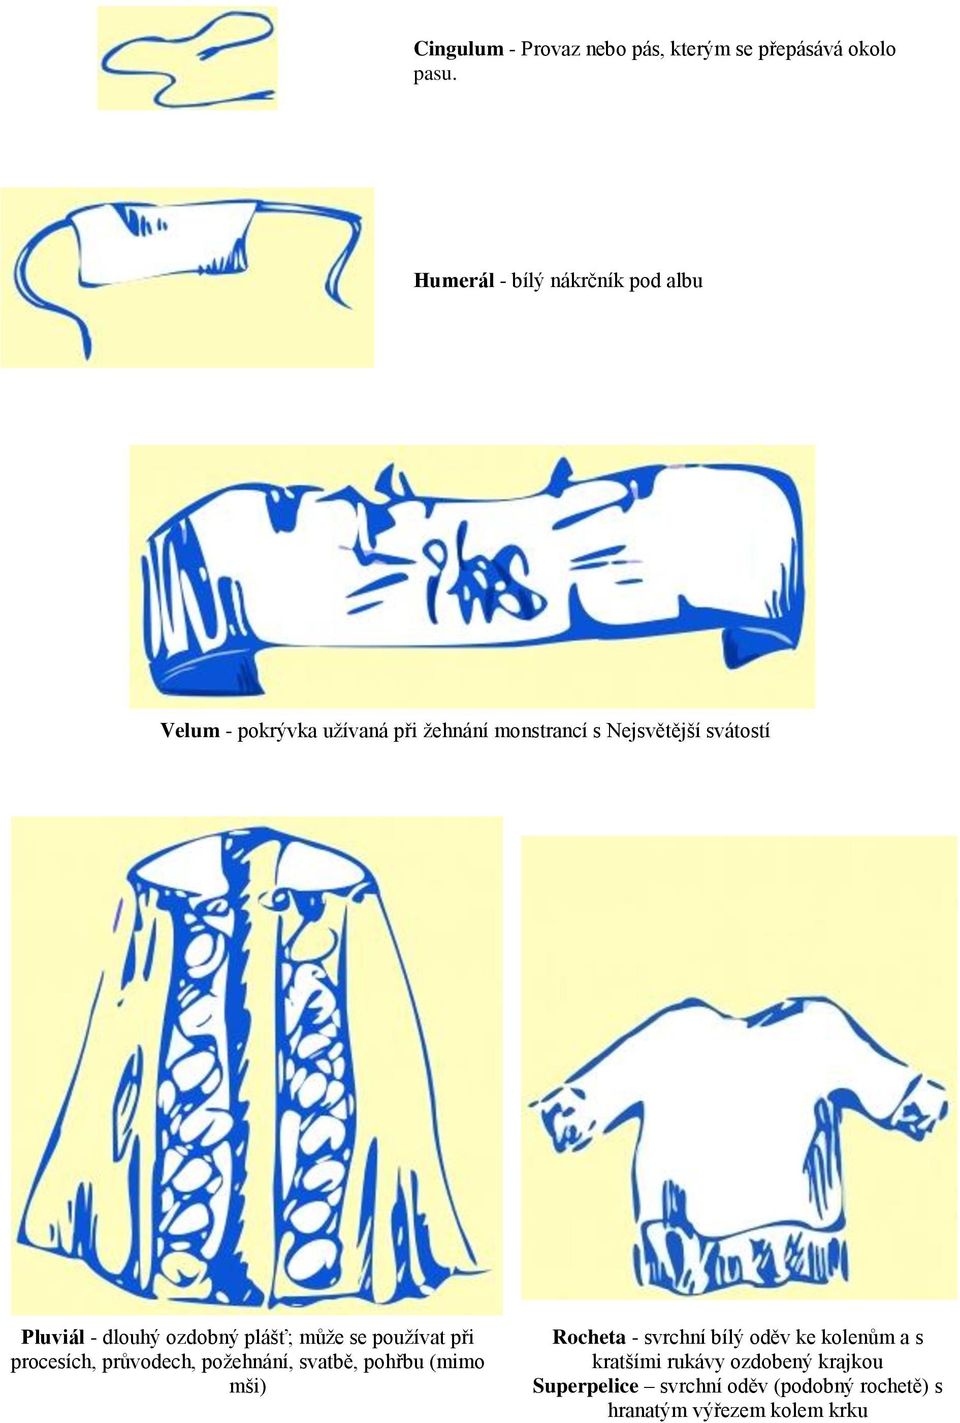 Pluviál - dlouhý ozdobný plášť; může se používat při procesích, průvodech, požehnání, svatbě, pohřbu